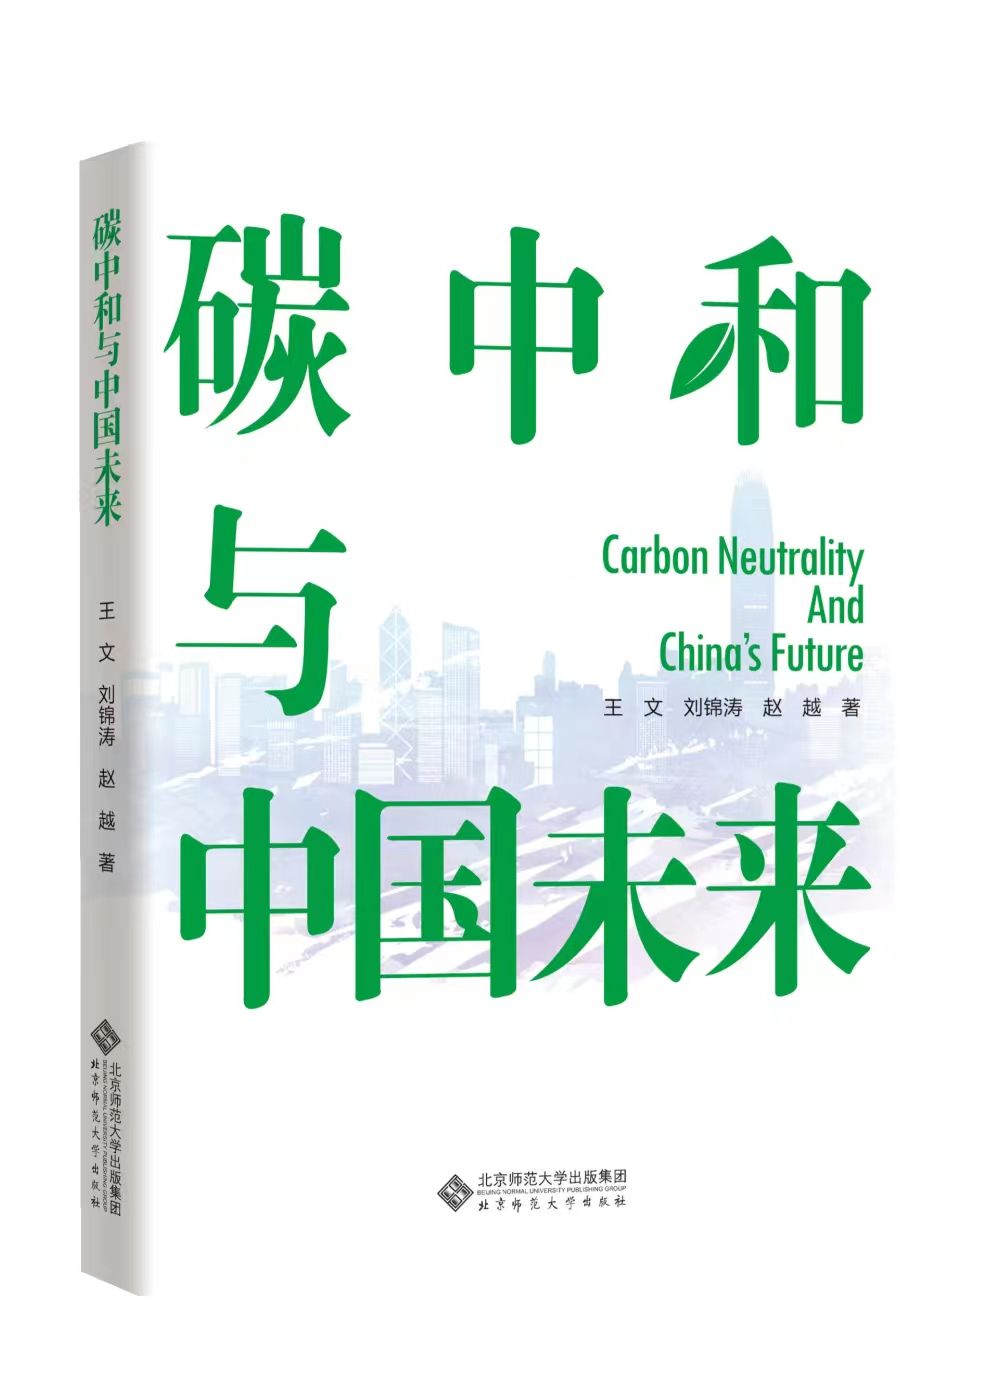 《碳中和与中国未来》:挖掘碳中和价值，探索中国机遇